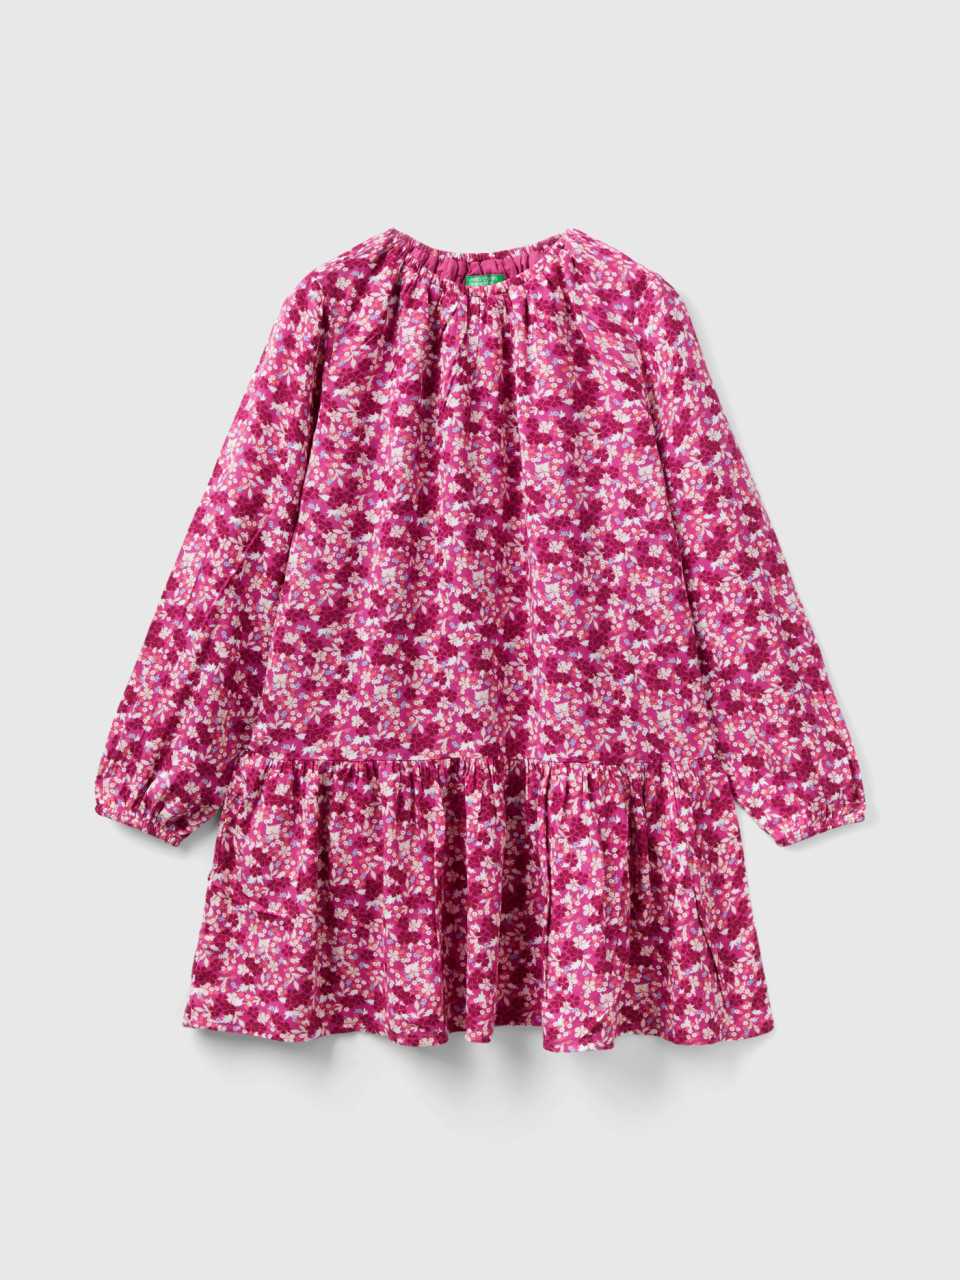 Benetton, Flowy Floral Dress, Multi-color, Kids